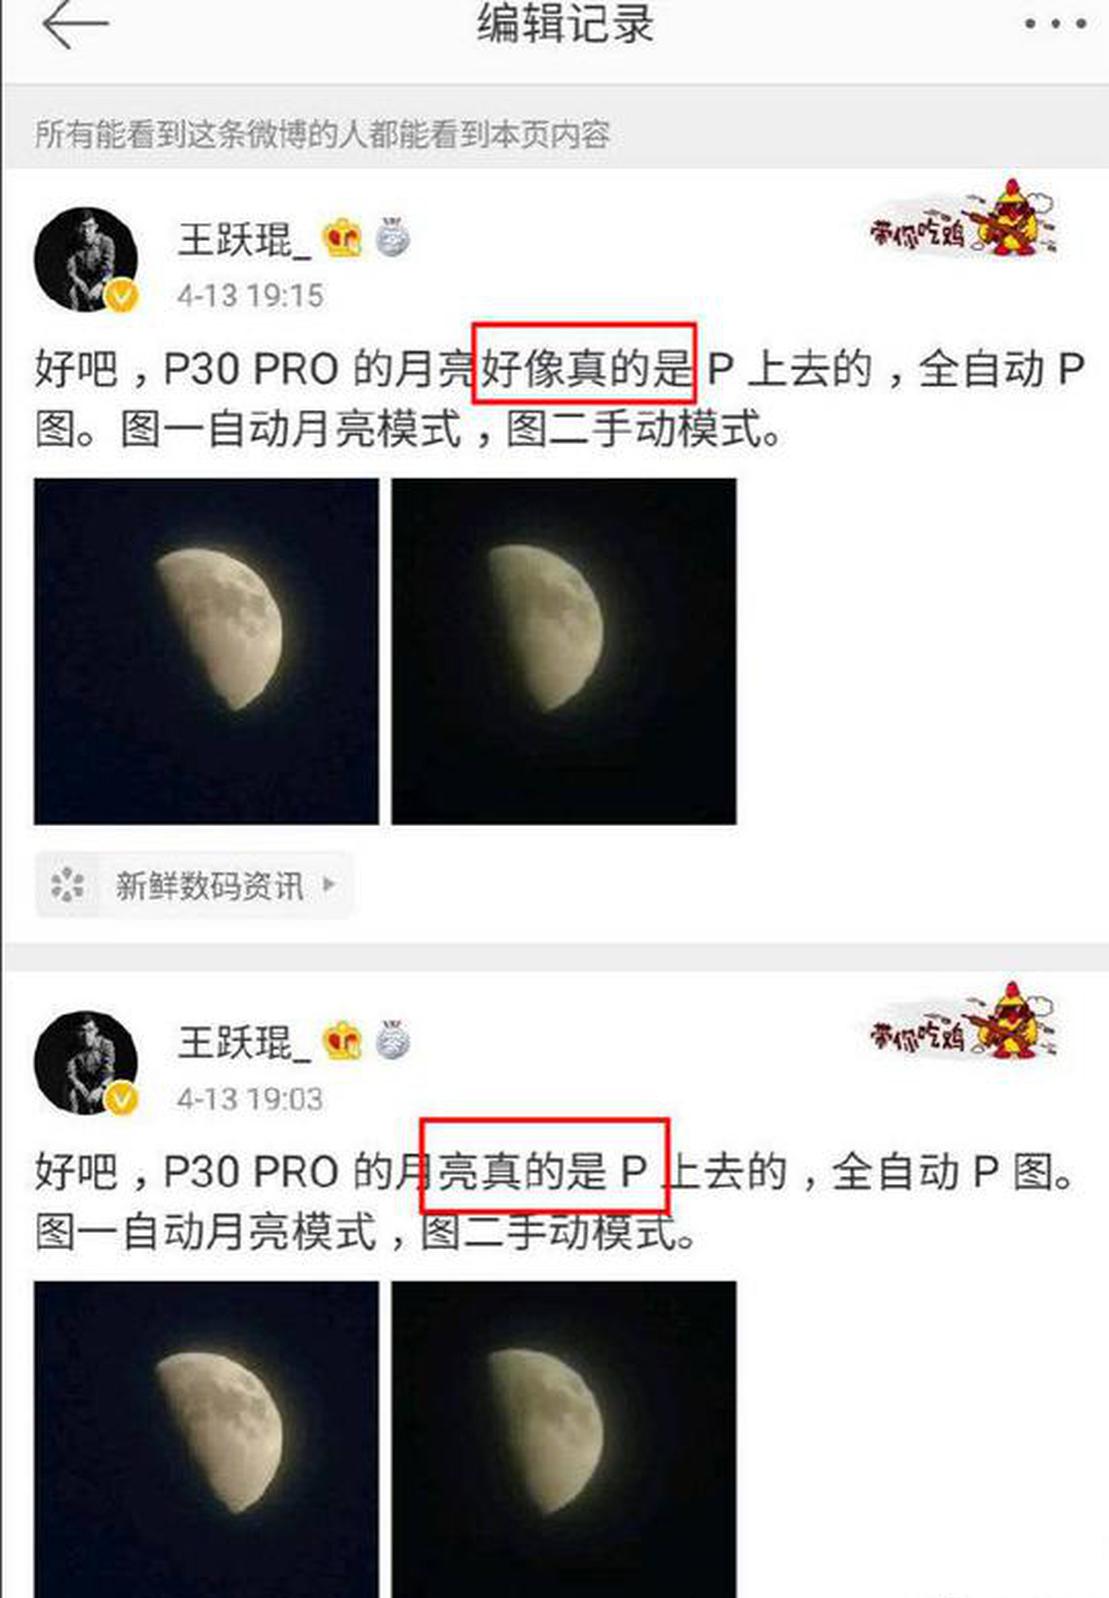 王跃坤质疑华为P30 Pro的微博